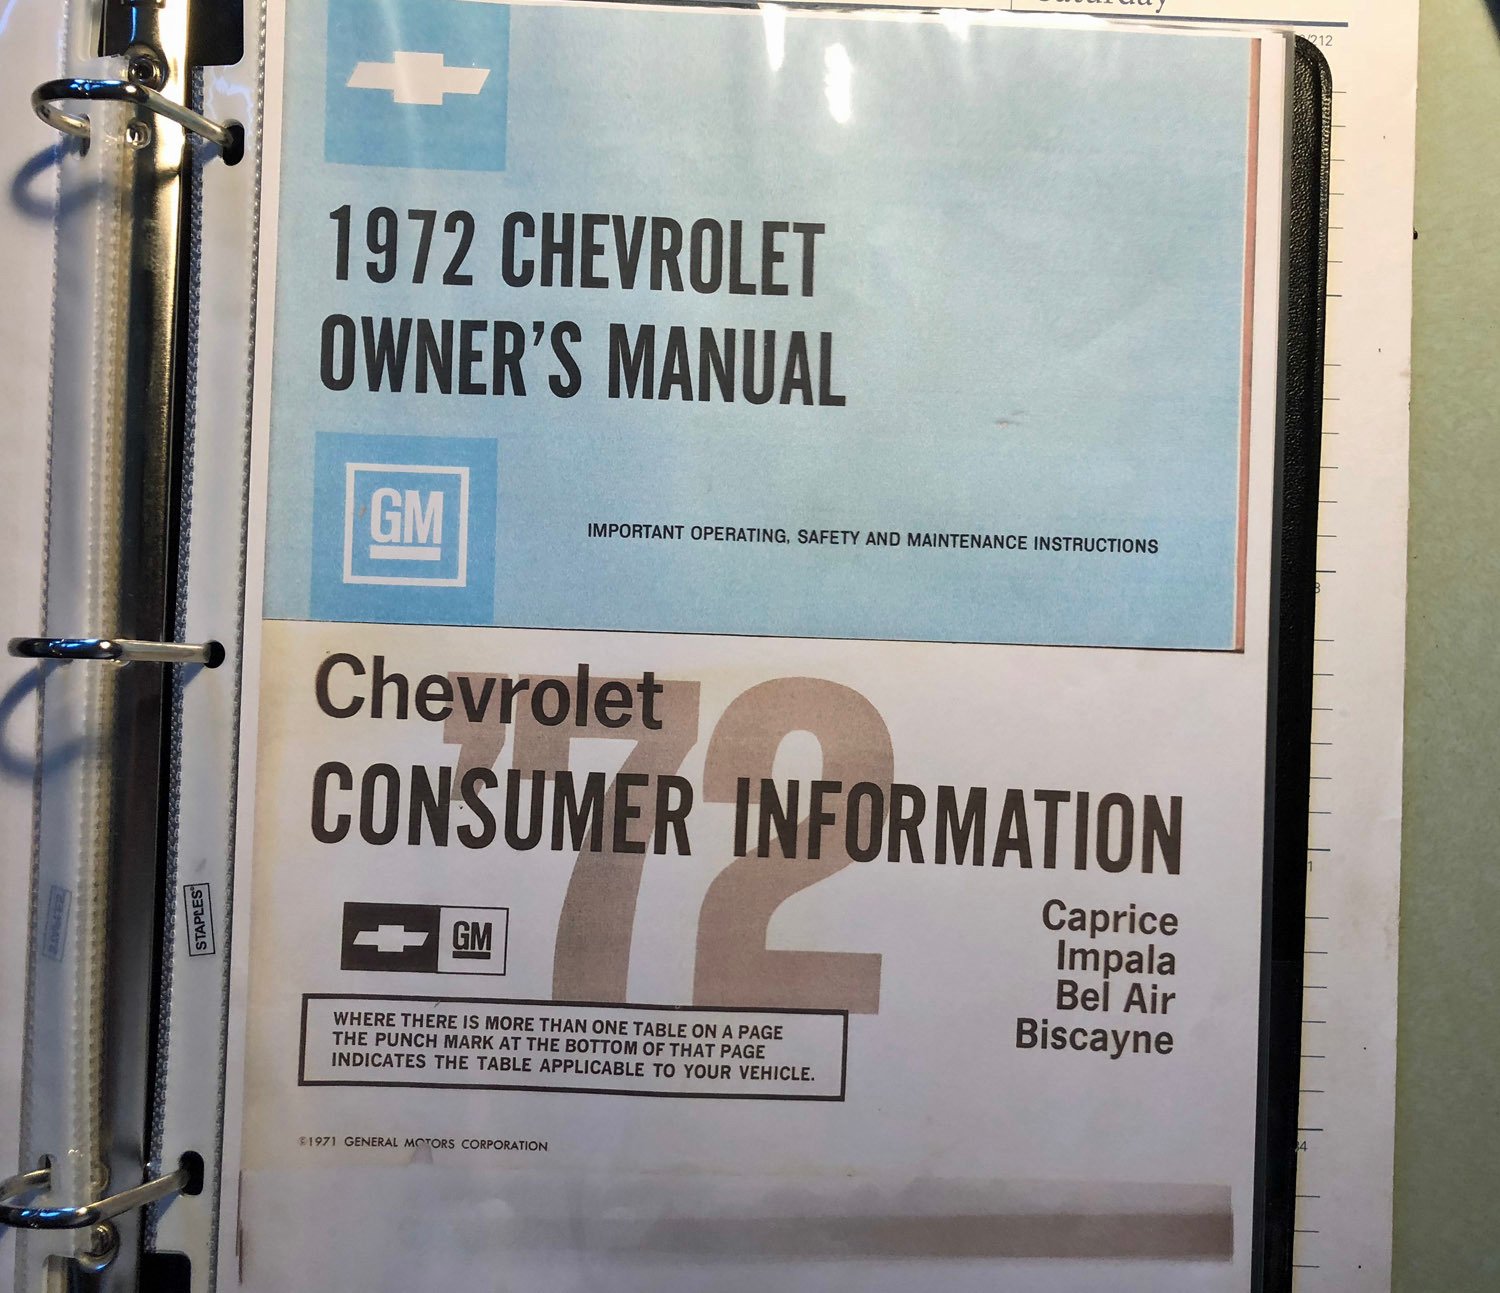 1972 Chevrolet Caprice